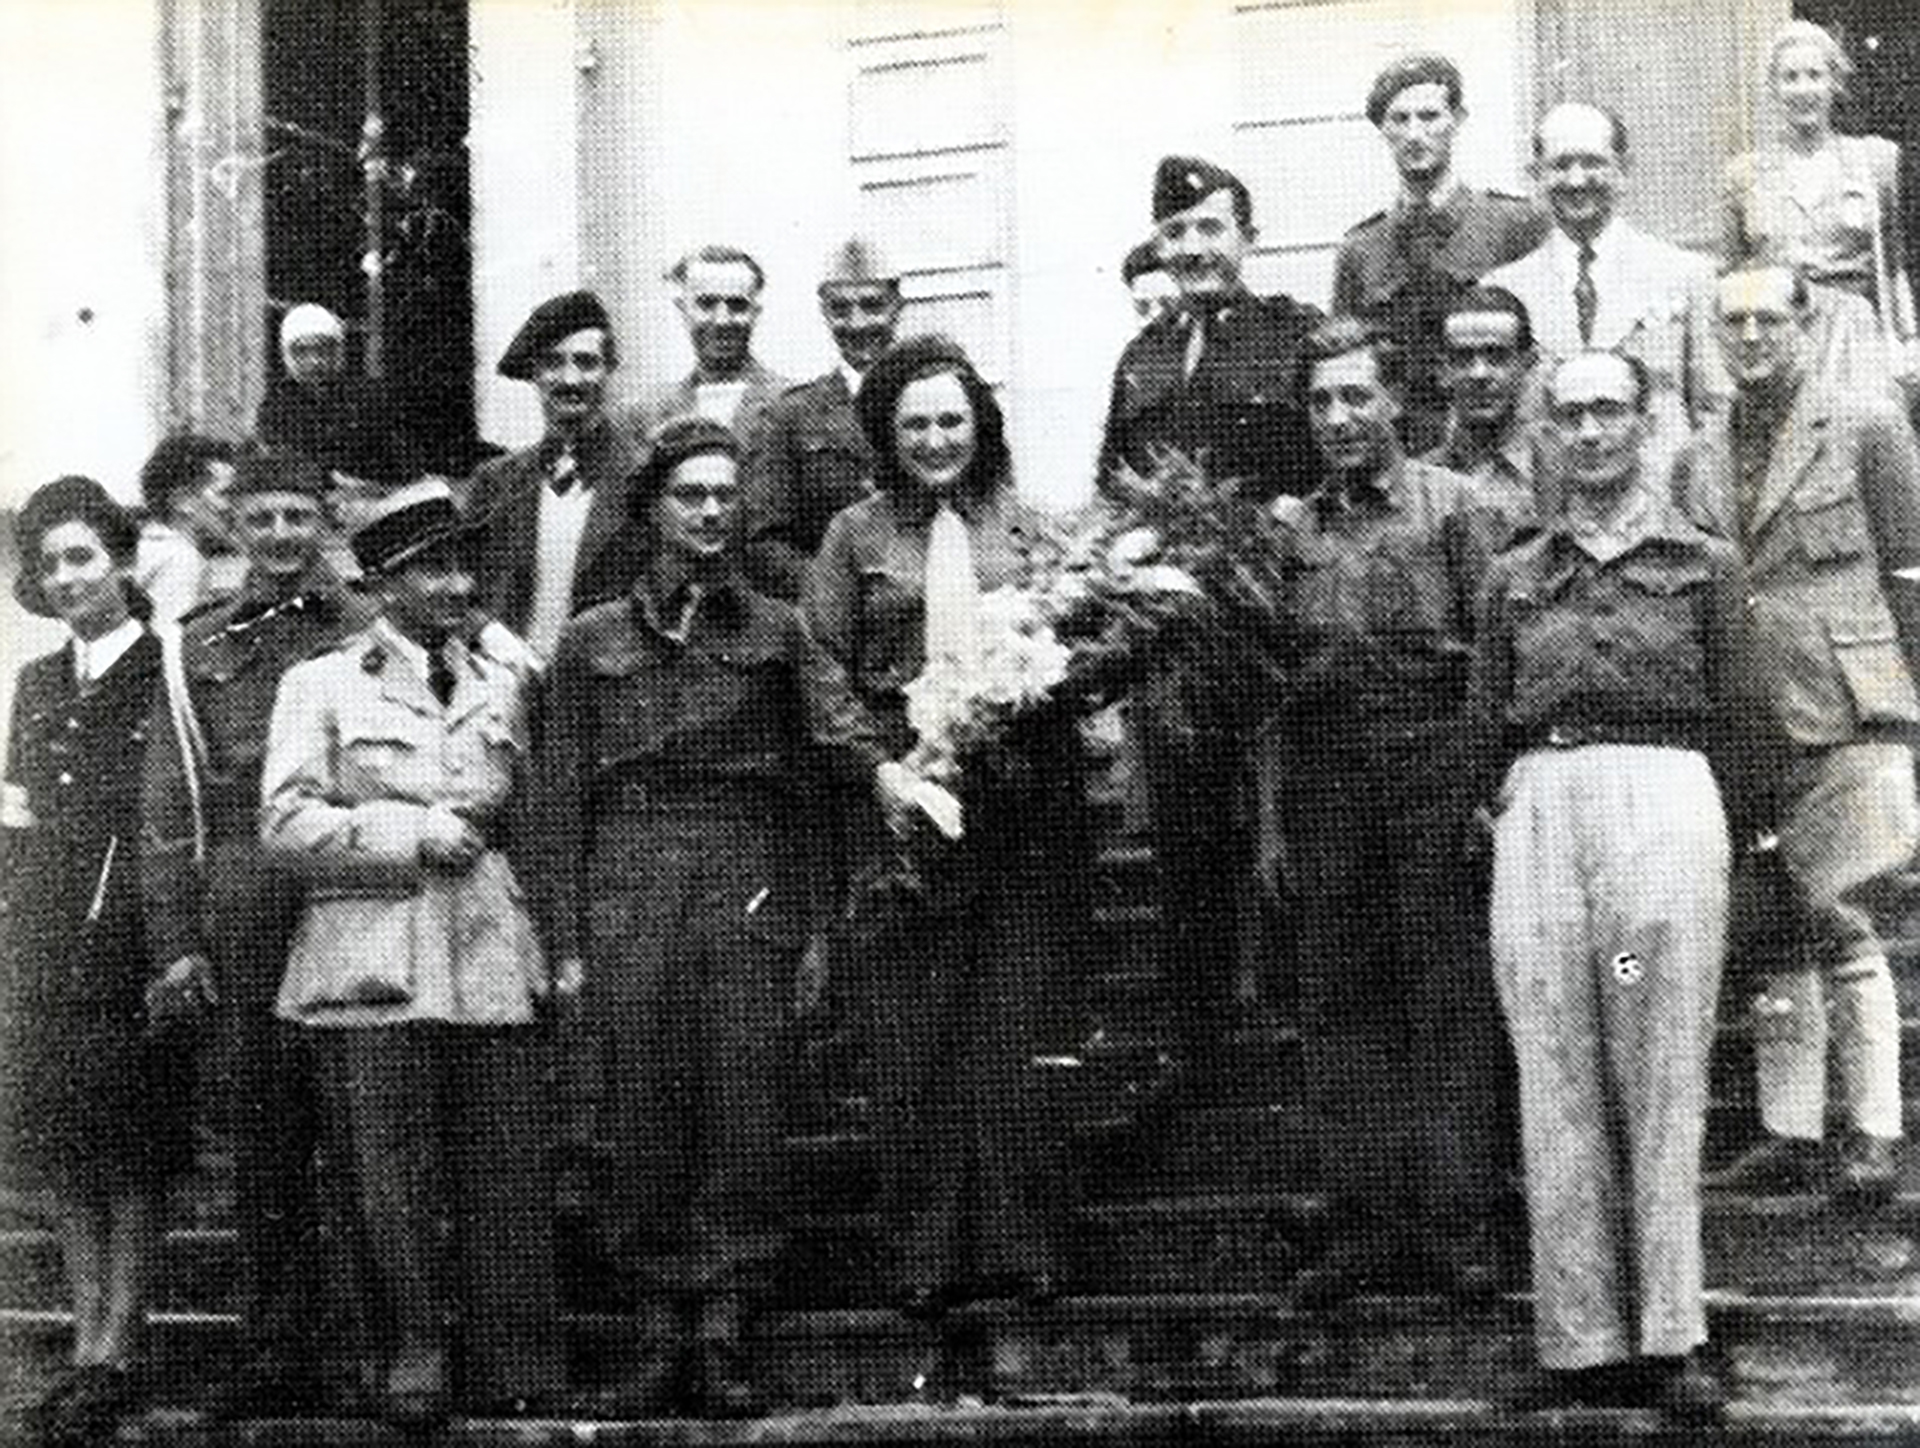 Nancy Wake en 1945 y un enorme ramo de flores como gratitud por su trabajo en la resistencia contra los nazis. Fue aclamada como una heroína después de la guerra